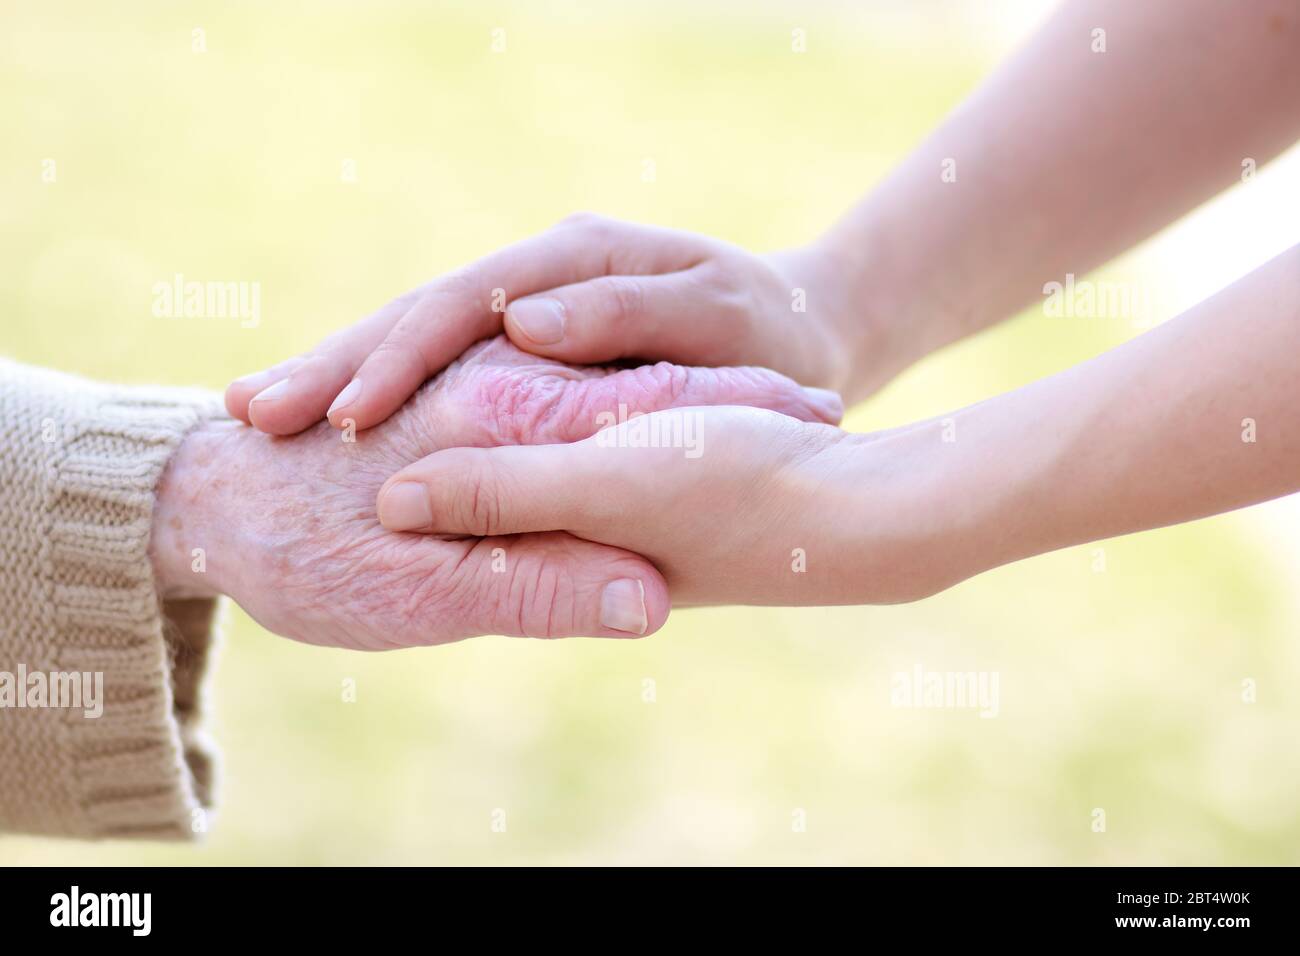 hand, hands, assistance, help, support, aid, senior, senior citizen, elderly  Stock Photo - Alamy